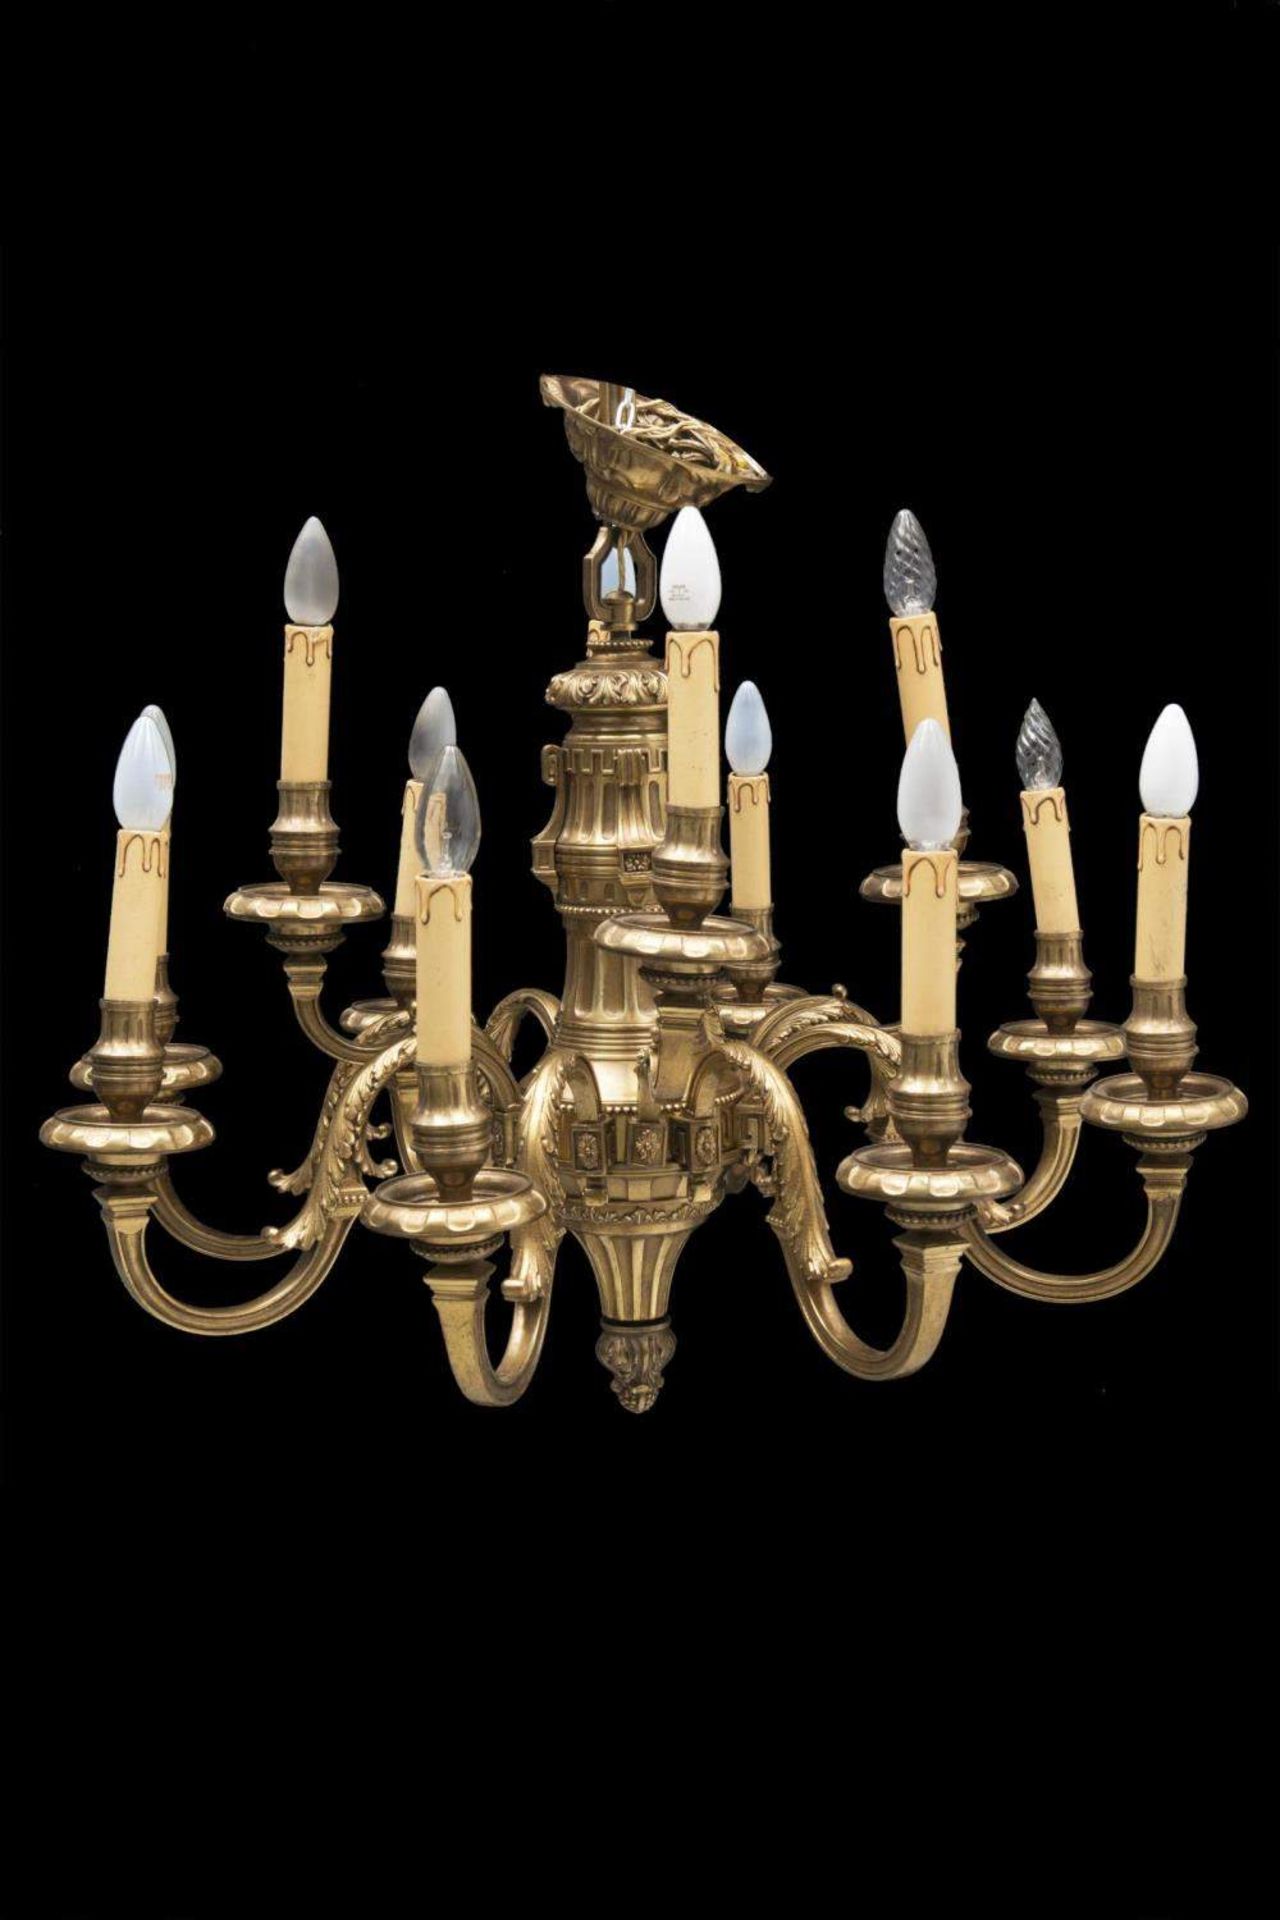 lustre en laiton de style Louis XVI à 12 feux
.
D. 78 cm
lustre électrifié, il faut cependant